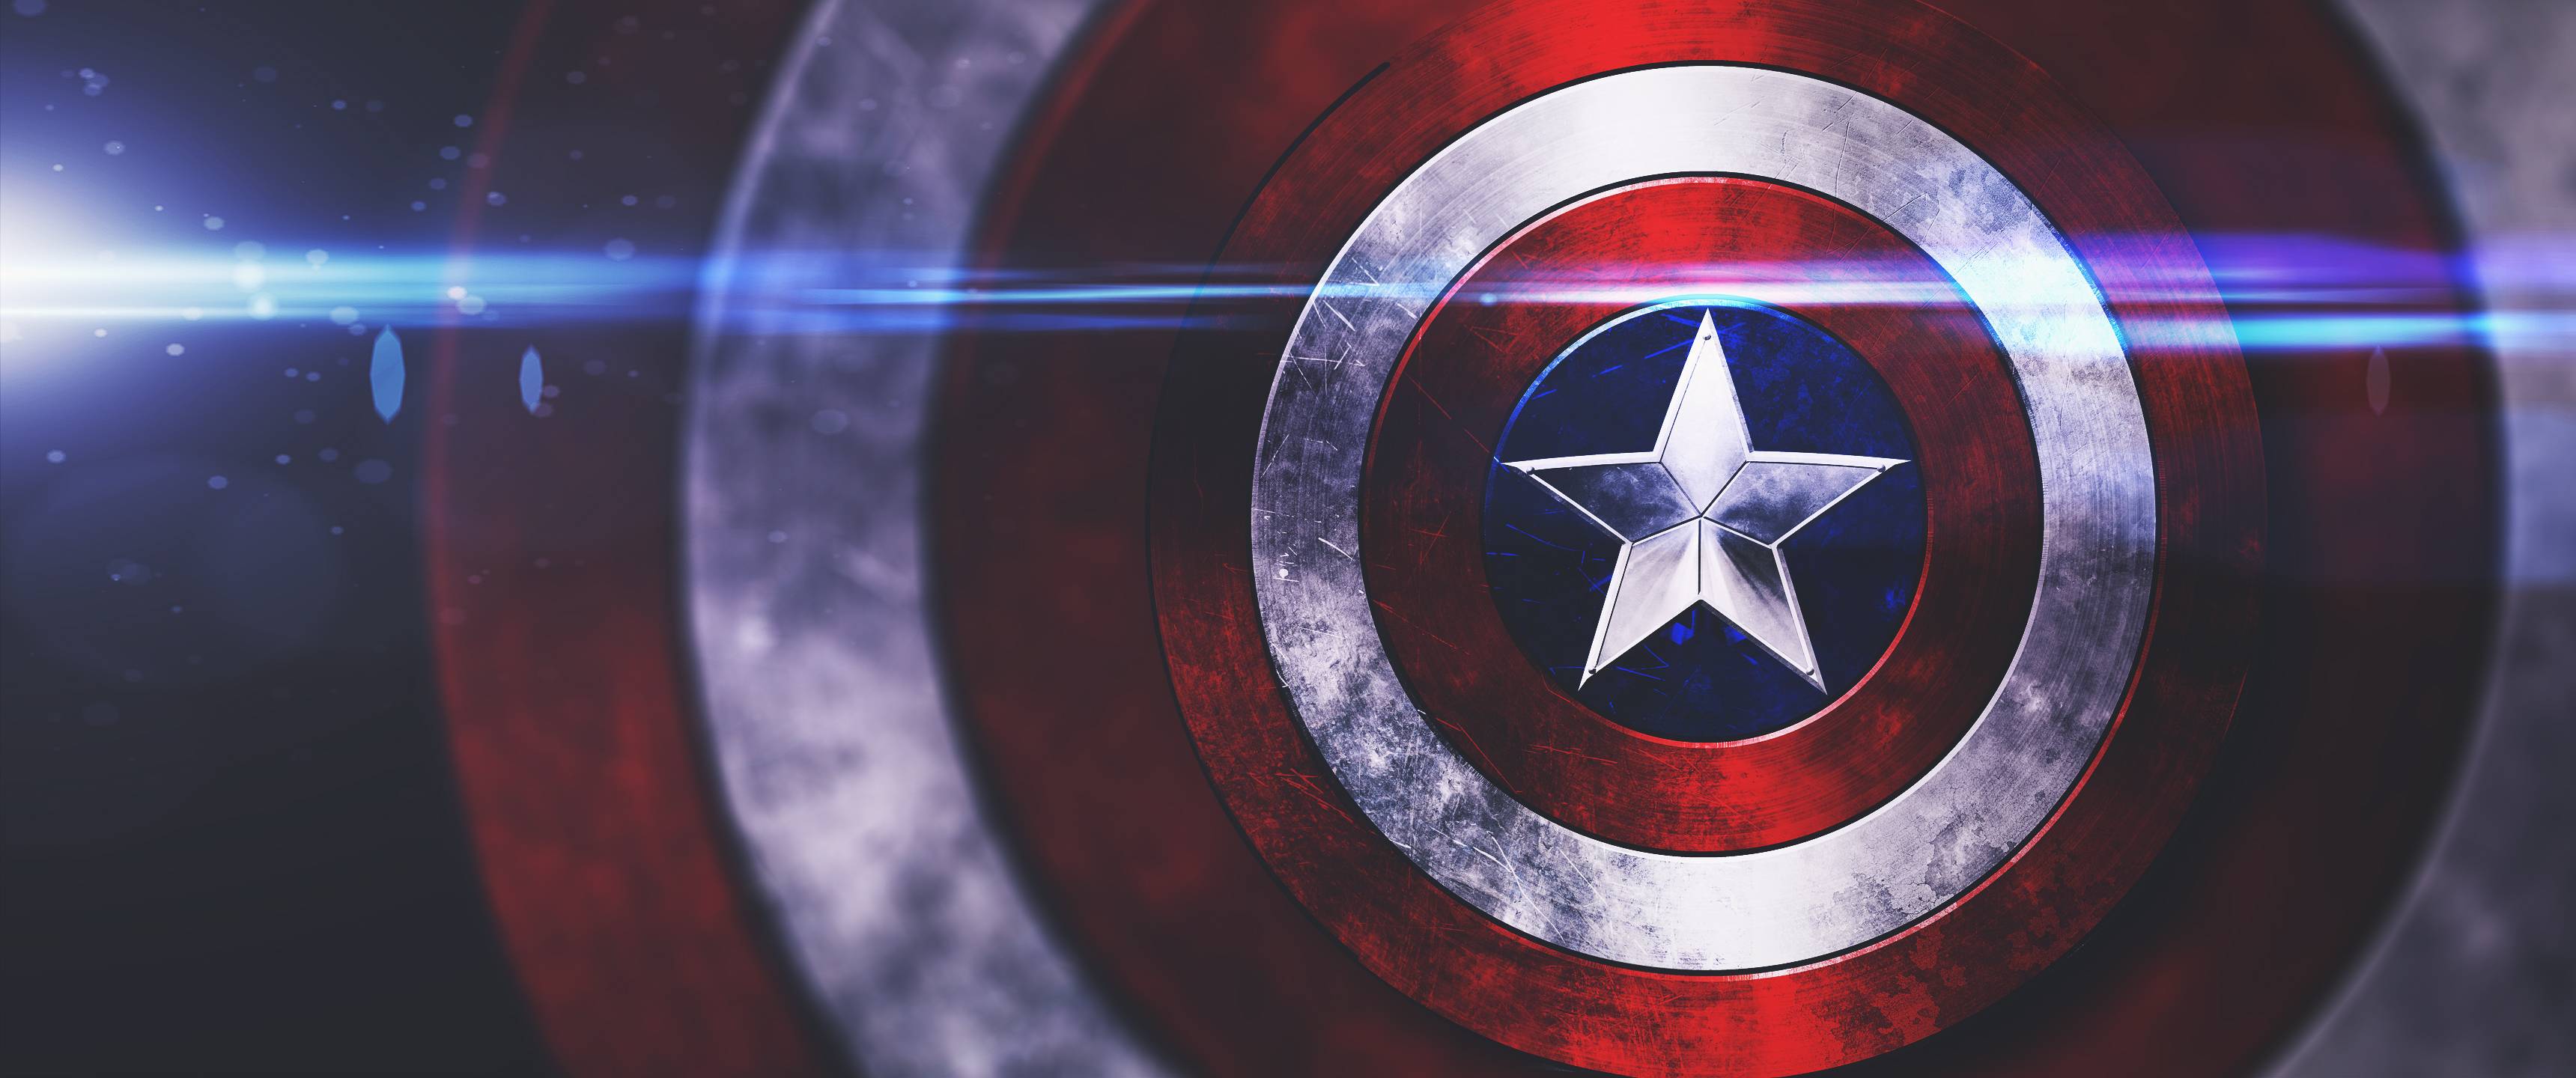 Captain America Shield Wallpaper Free Captain America